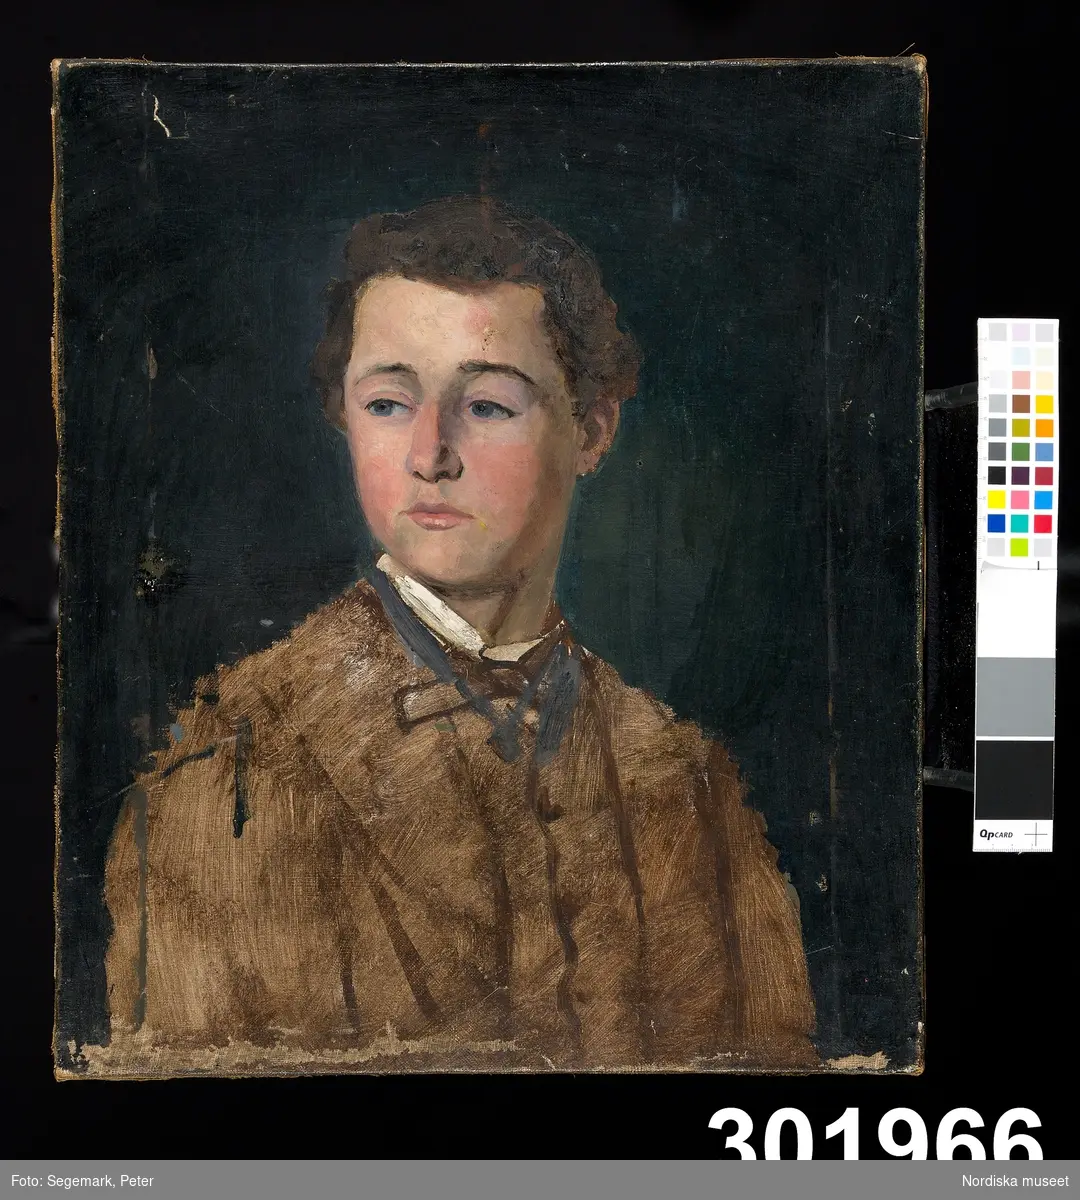 Porträtt, en face, av ung pojke i brun skjorta mot mörk bakgrund.